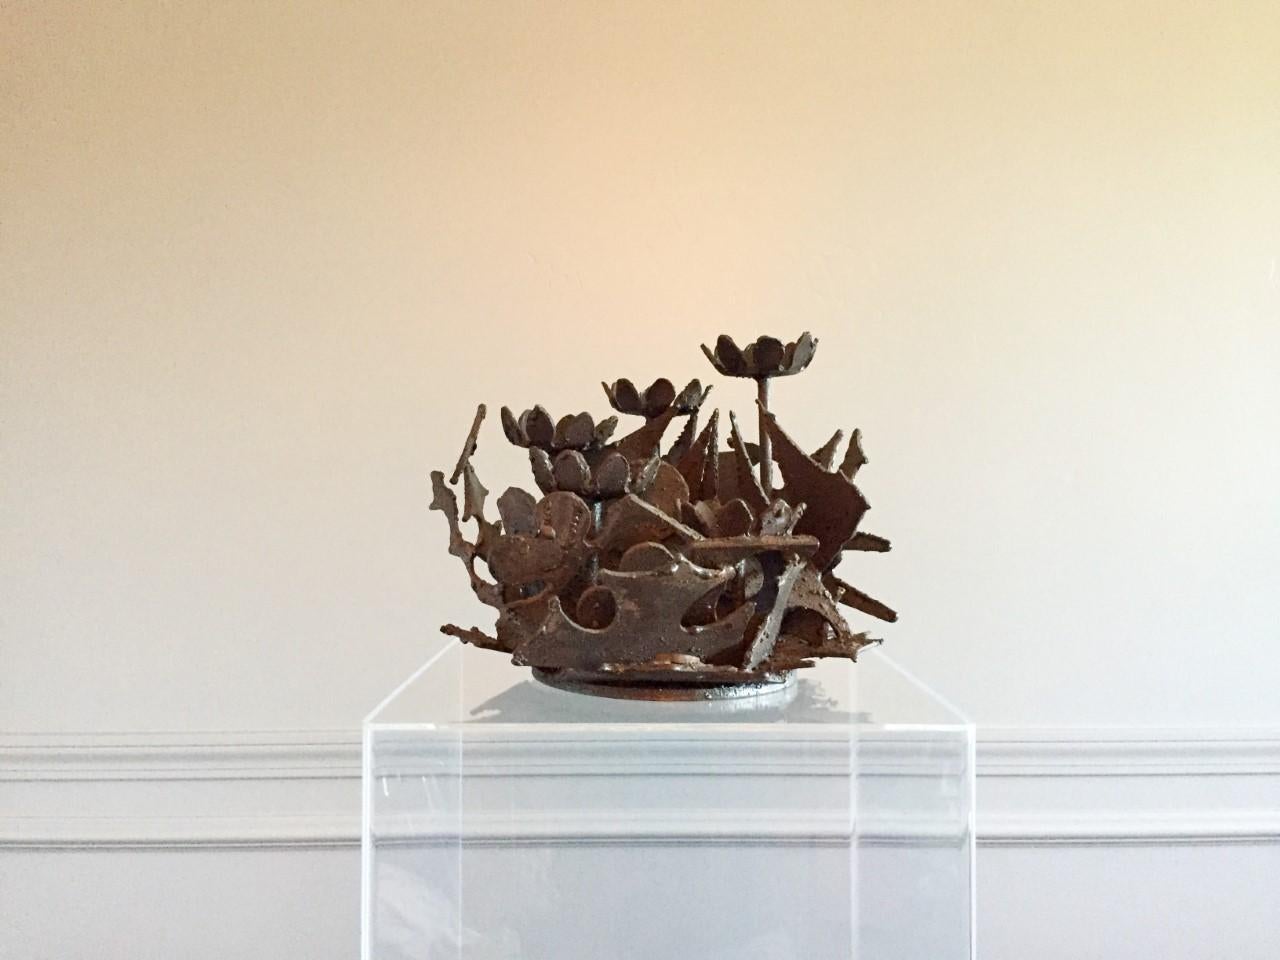 American Flowers and Leaves Brutalist Welded-Steel Sculpture by Wasserman